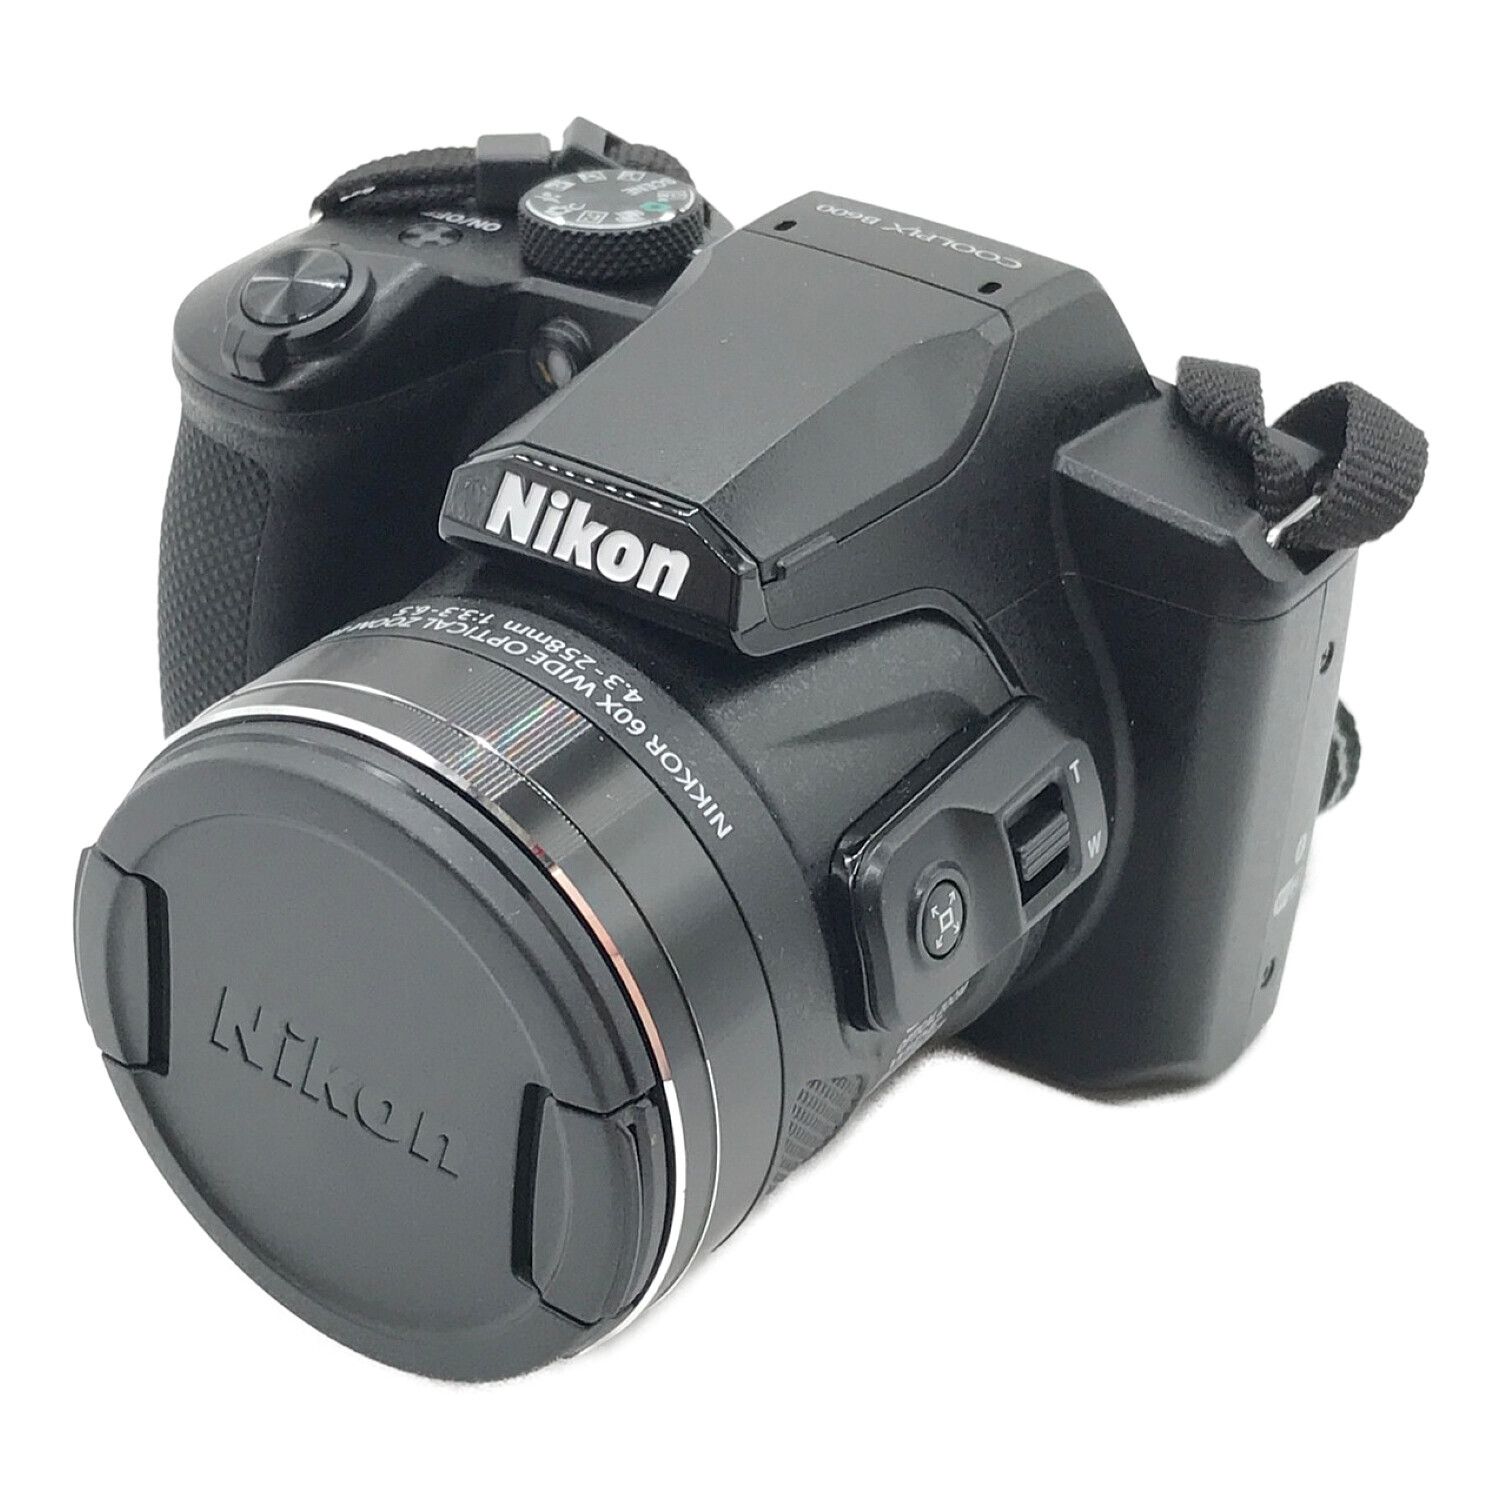 Nikon (ニコン) デジタル一眼レフカメラ COOLPIX B600